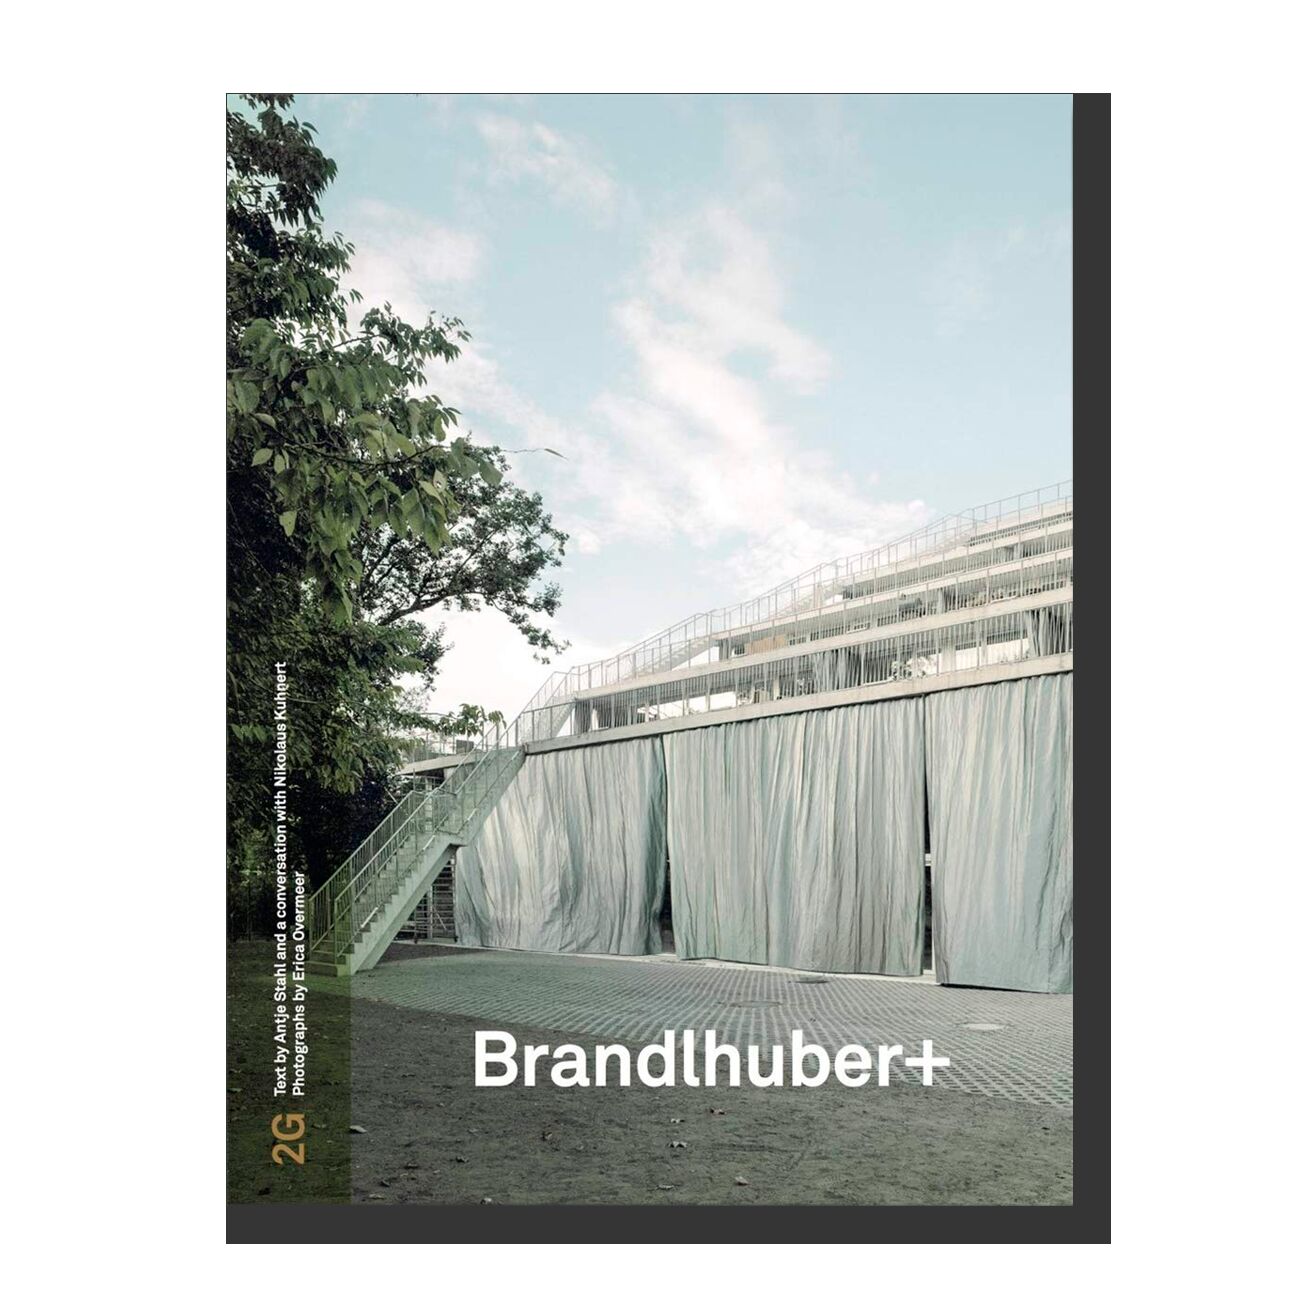 2G: Brandlhuber+: Issue #81